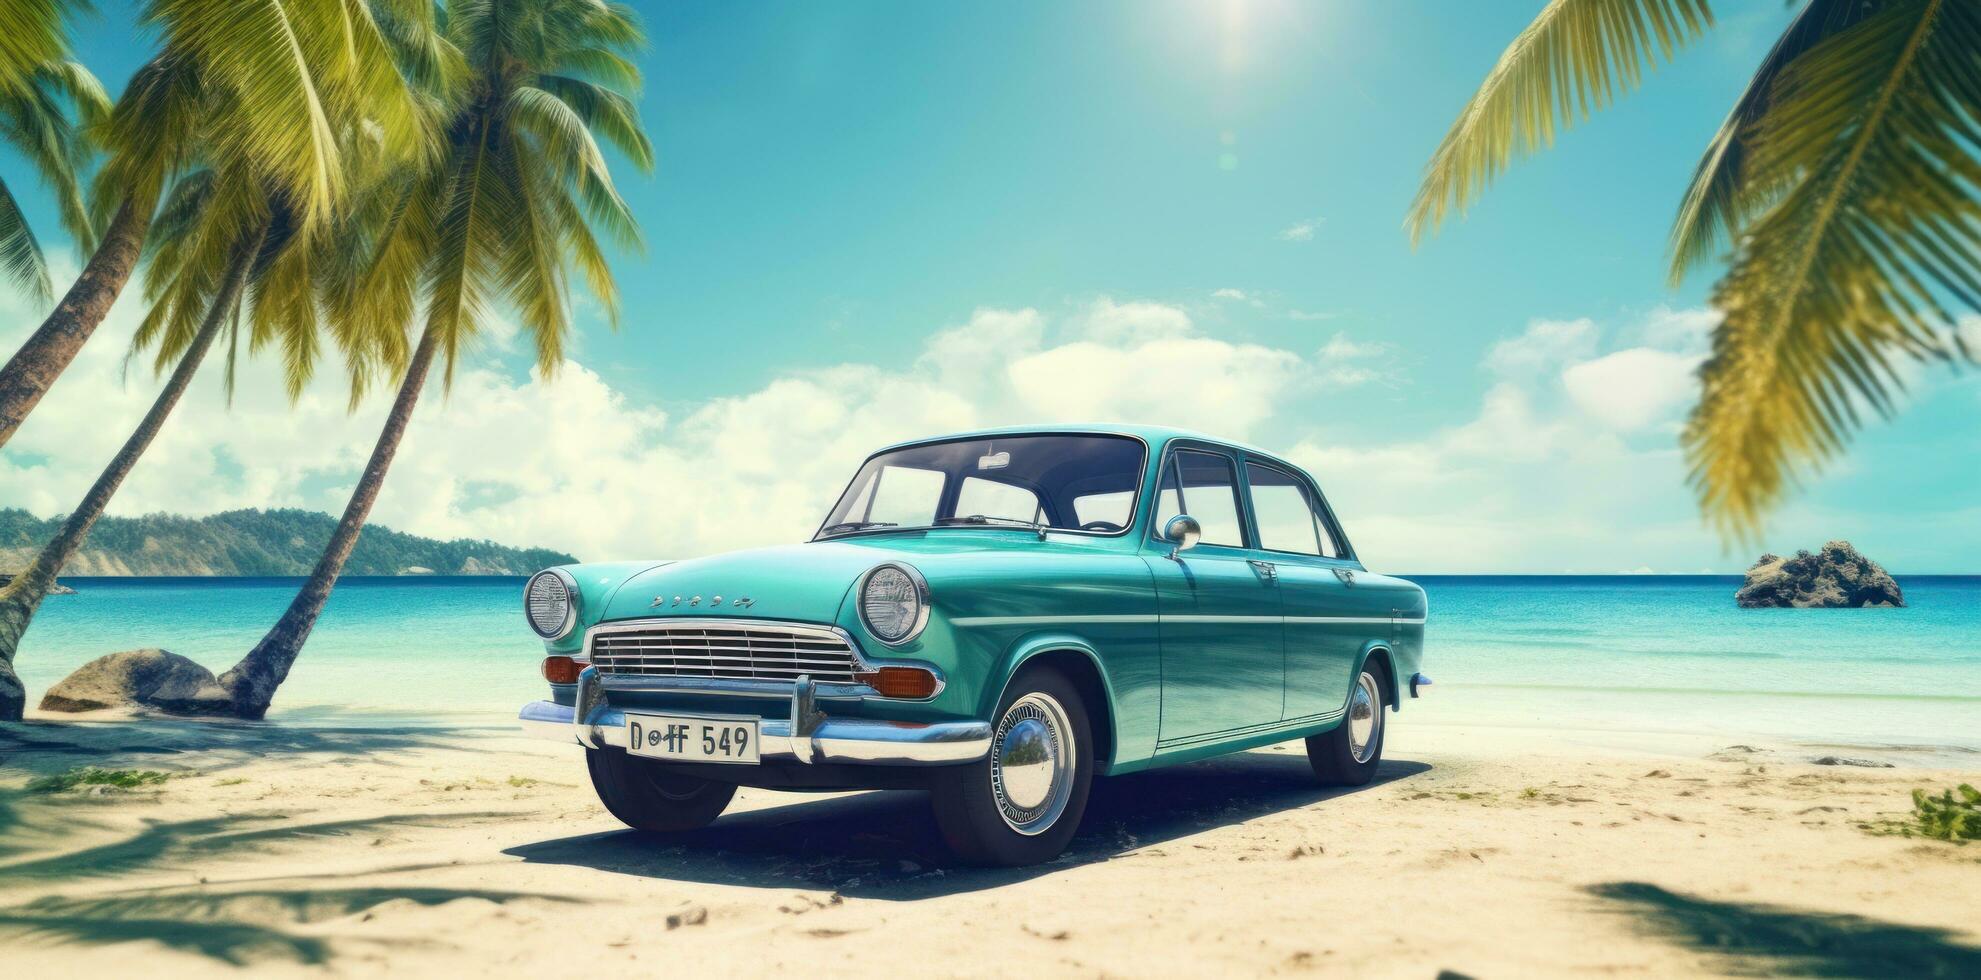 Cute retro beach car photo